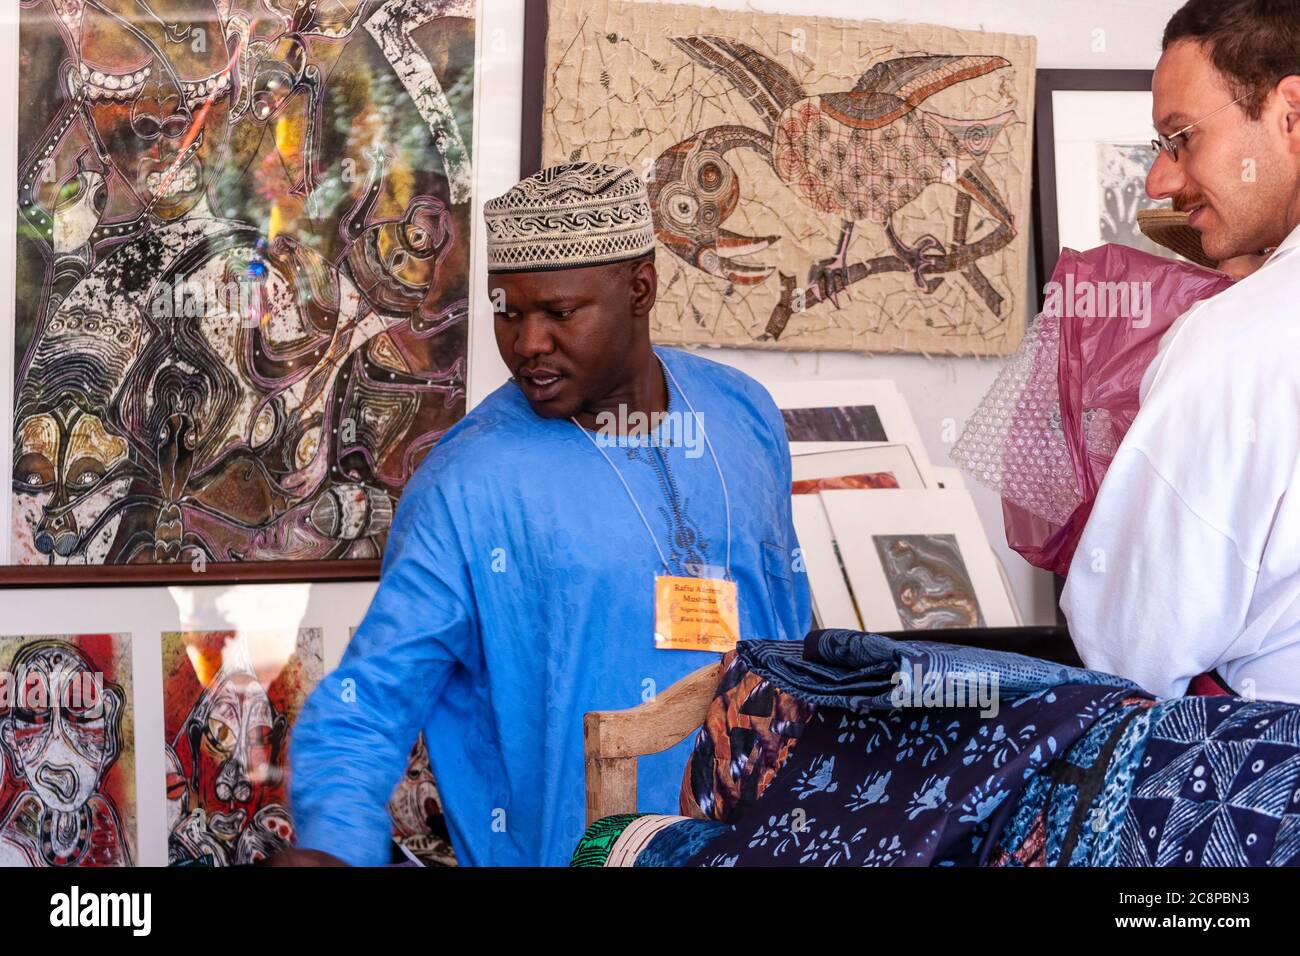 Artisan Rafiu Aderemi Mustapha (nigérian de la tribu Yoruba) vendant son art, marché international d'art folklorique, Santa Fe, Nouveau-Mexique, Etats-Unis Banque D'Images